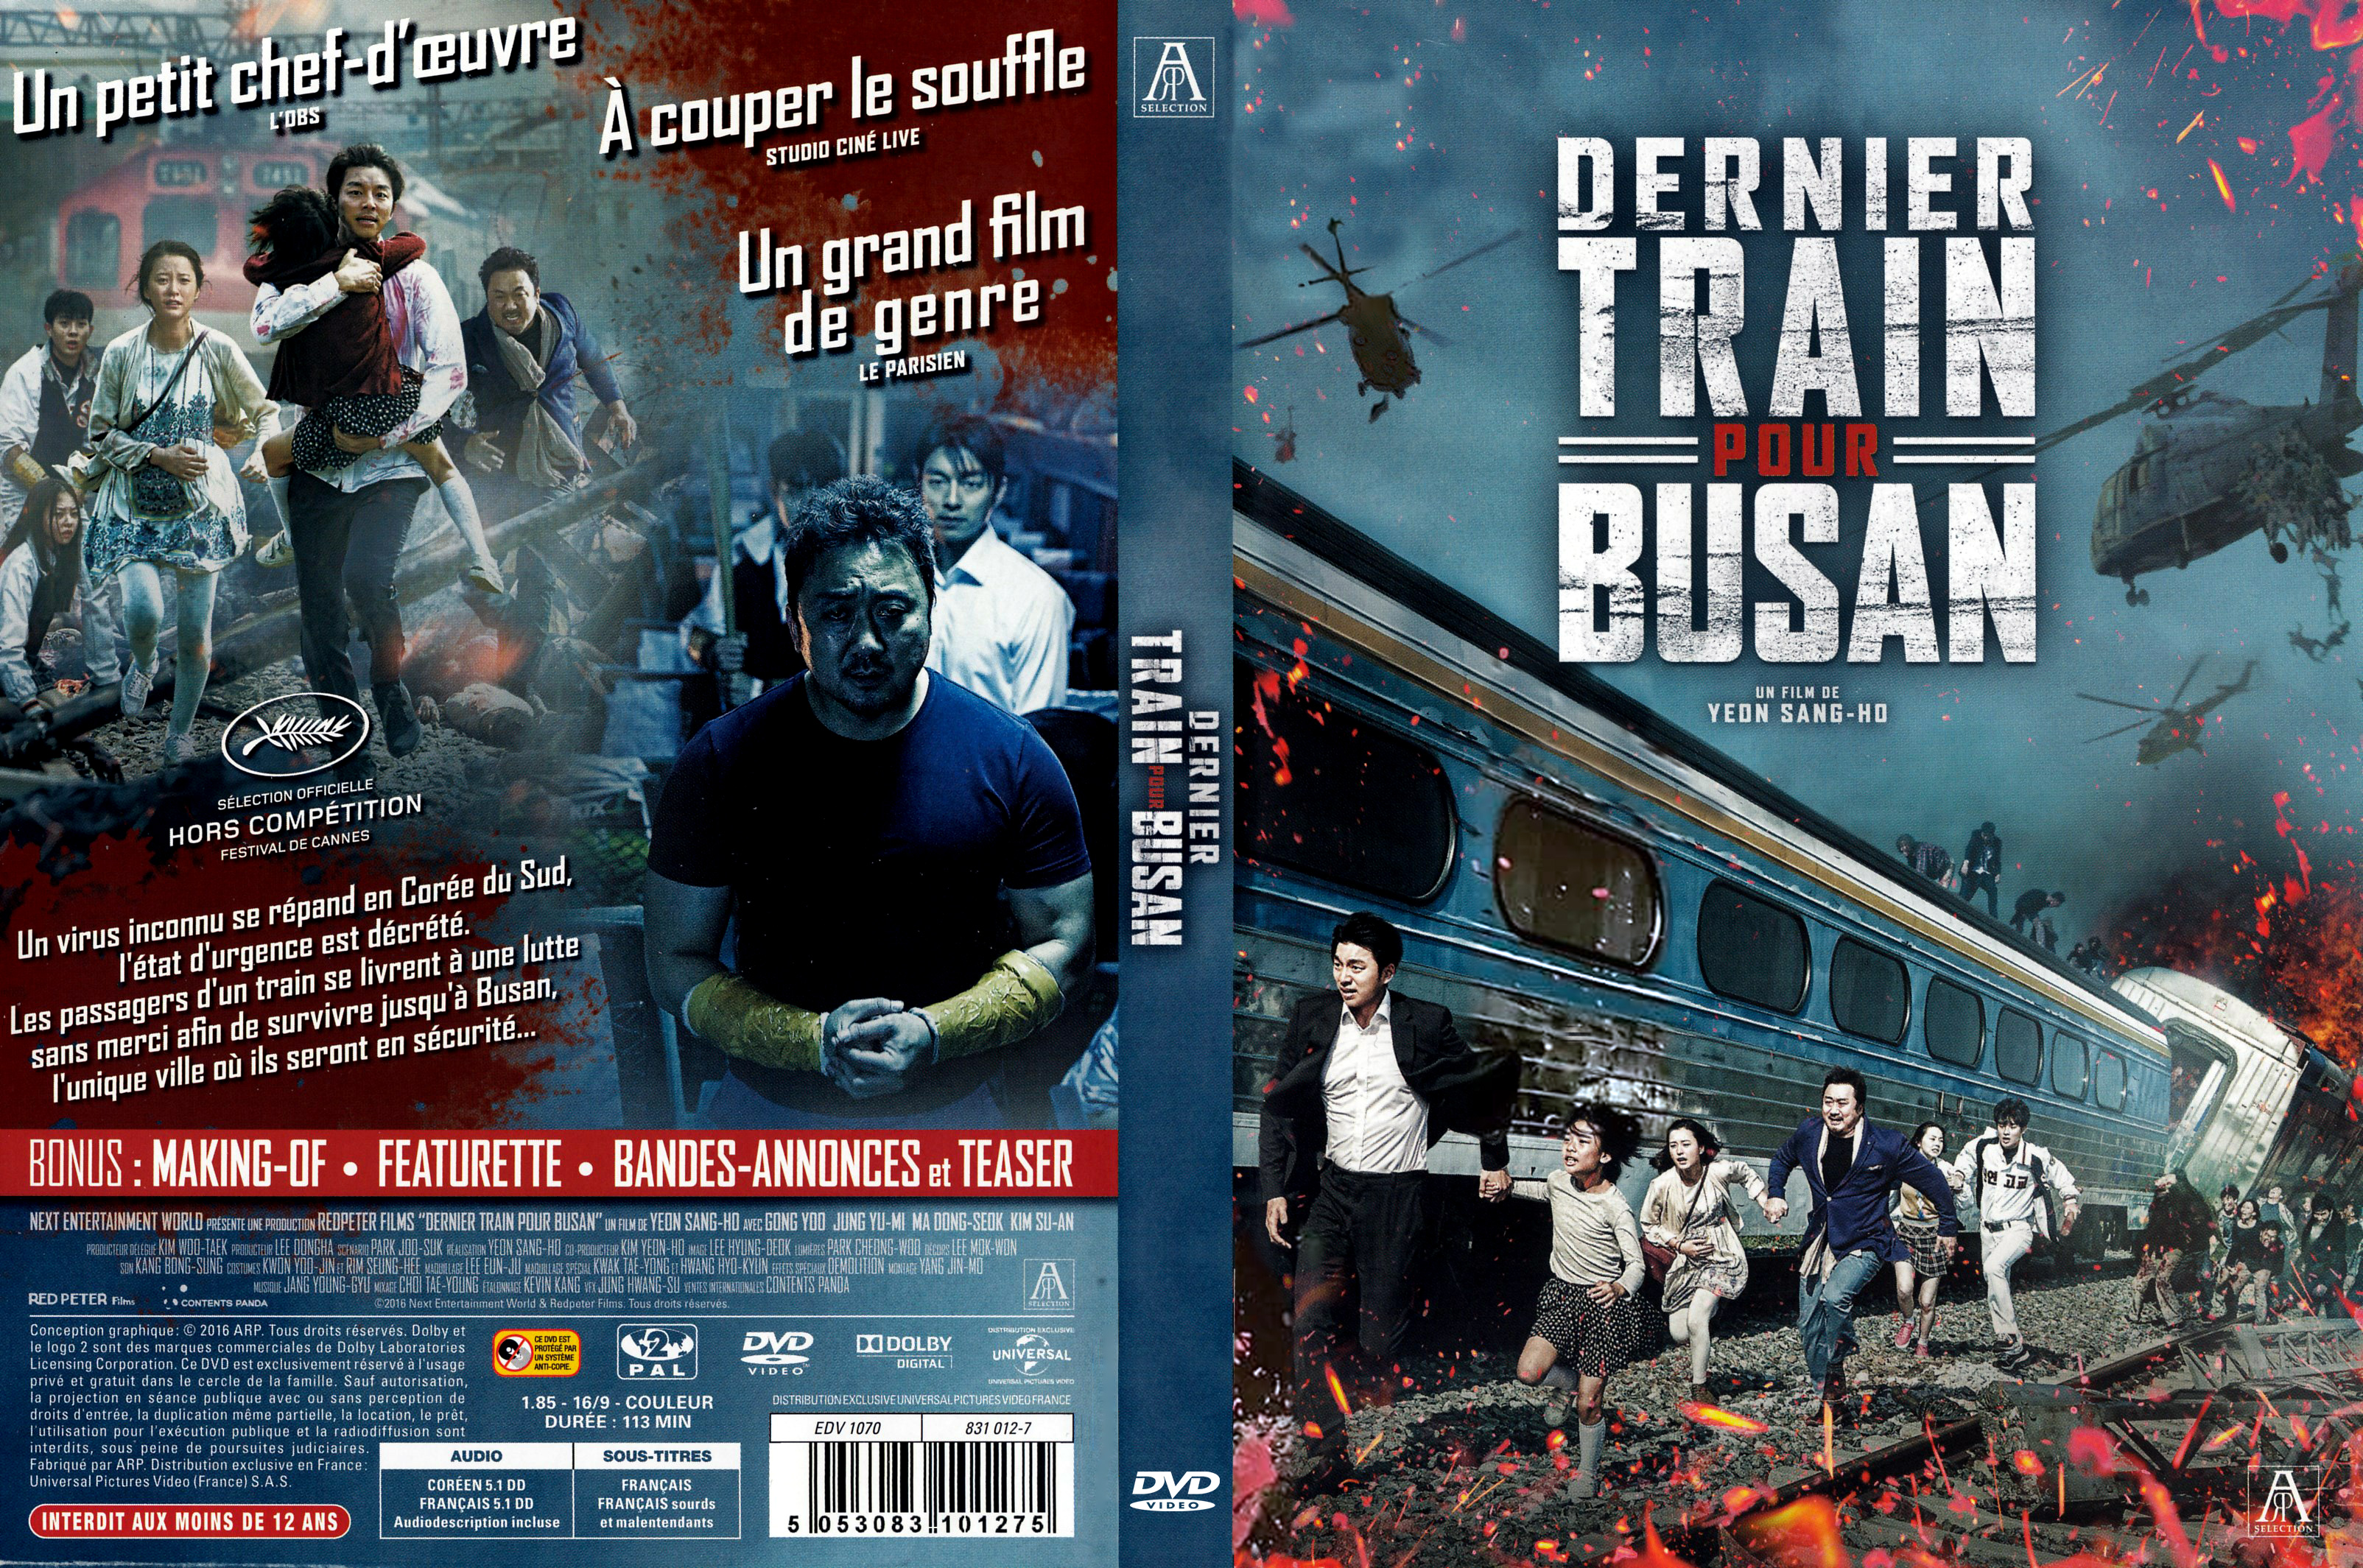 Jaquette DVD Dernier train pour busan